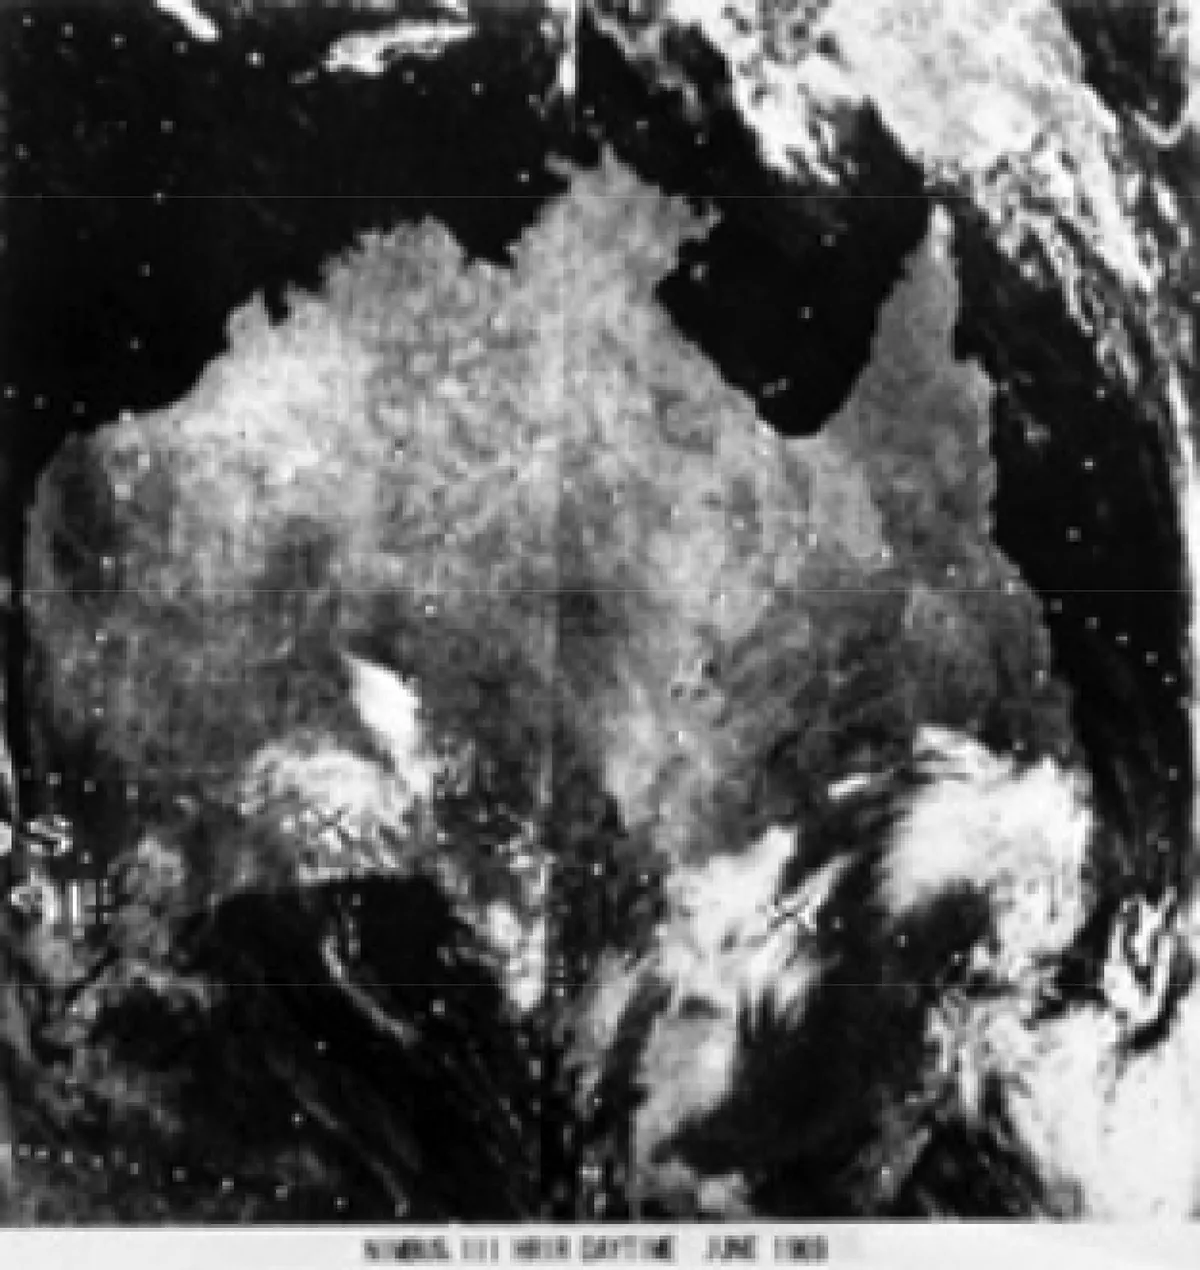 Nimbus-3 satellite view of Australia